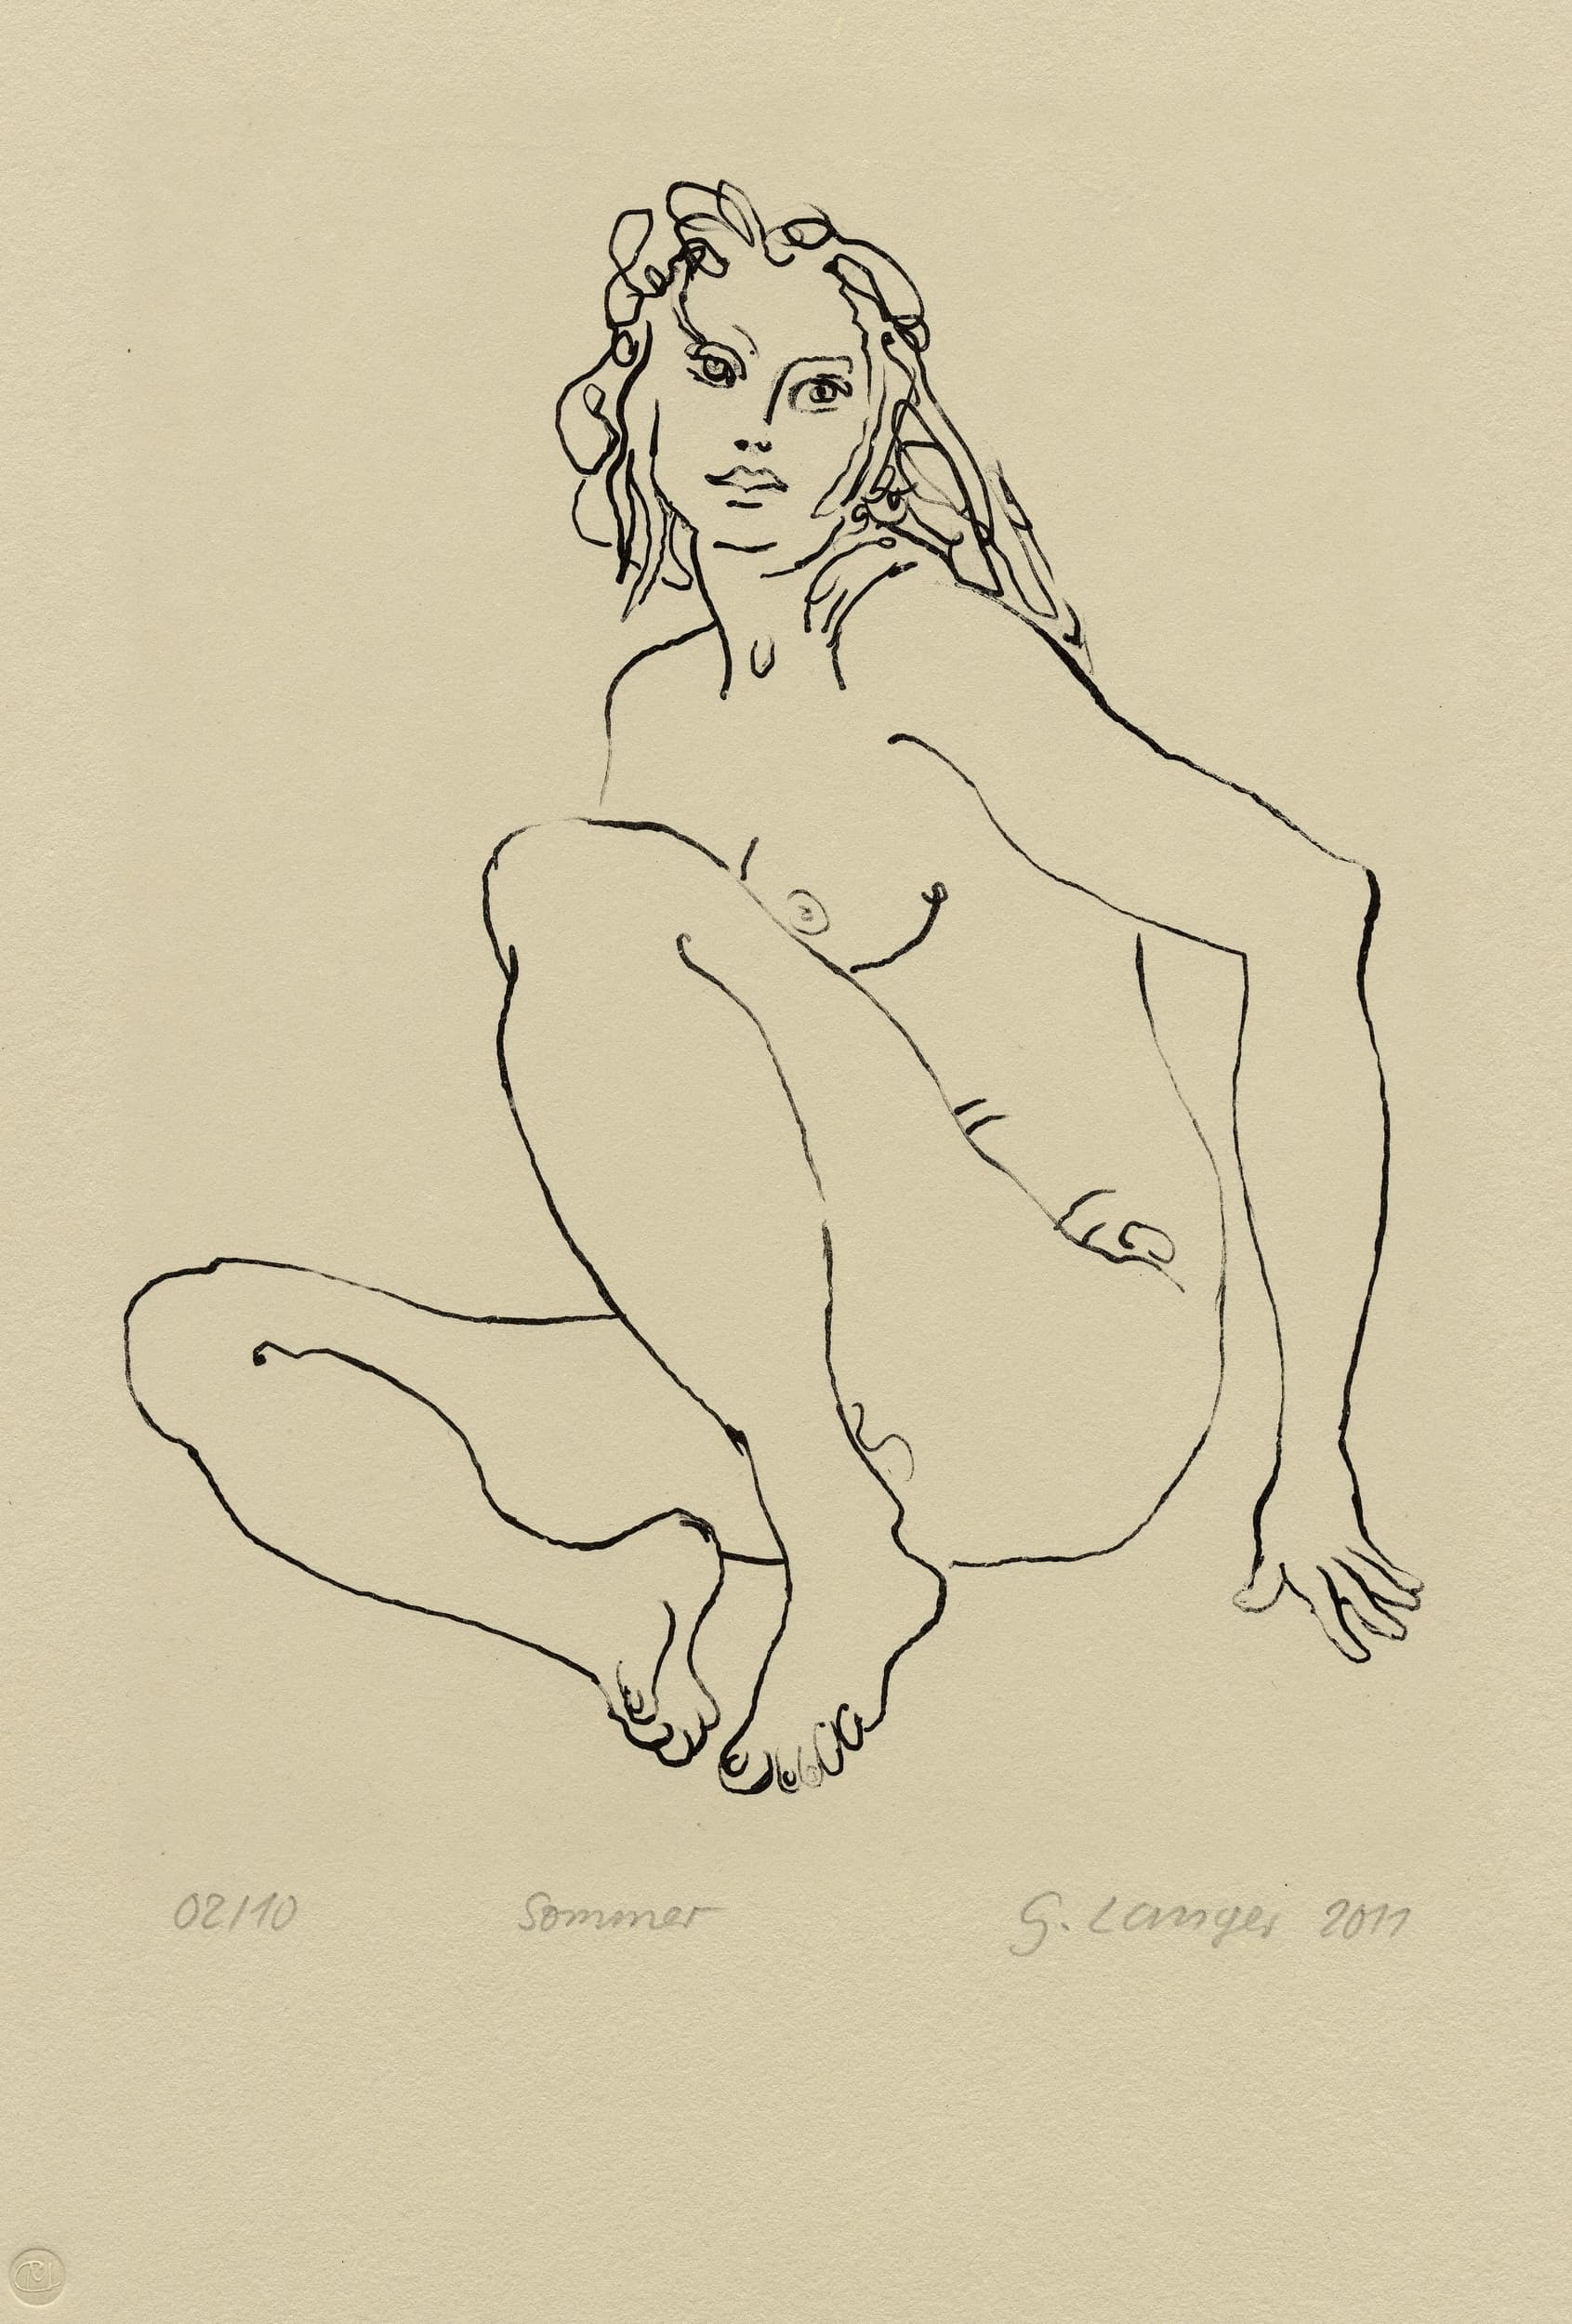 Gunter Langer, sitzender weiblicher Akt, 2011, Lithographie (Druckgrafik), Büttenpapier